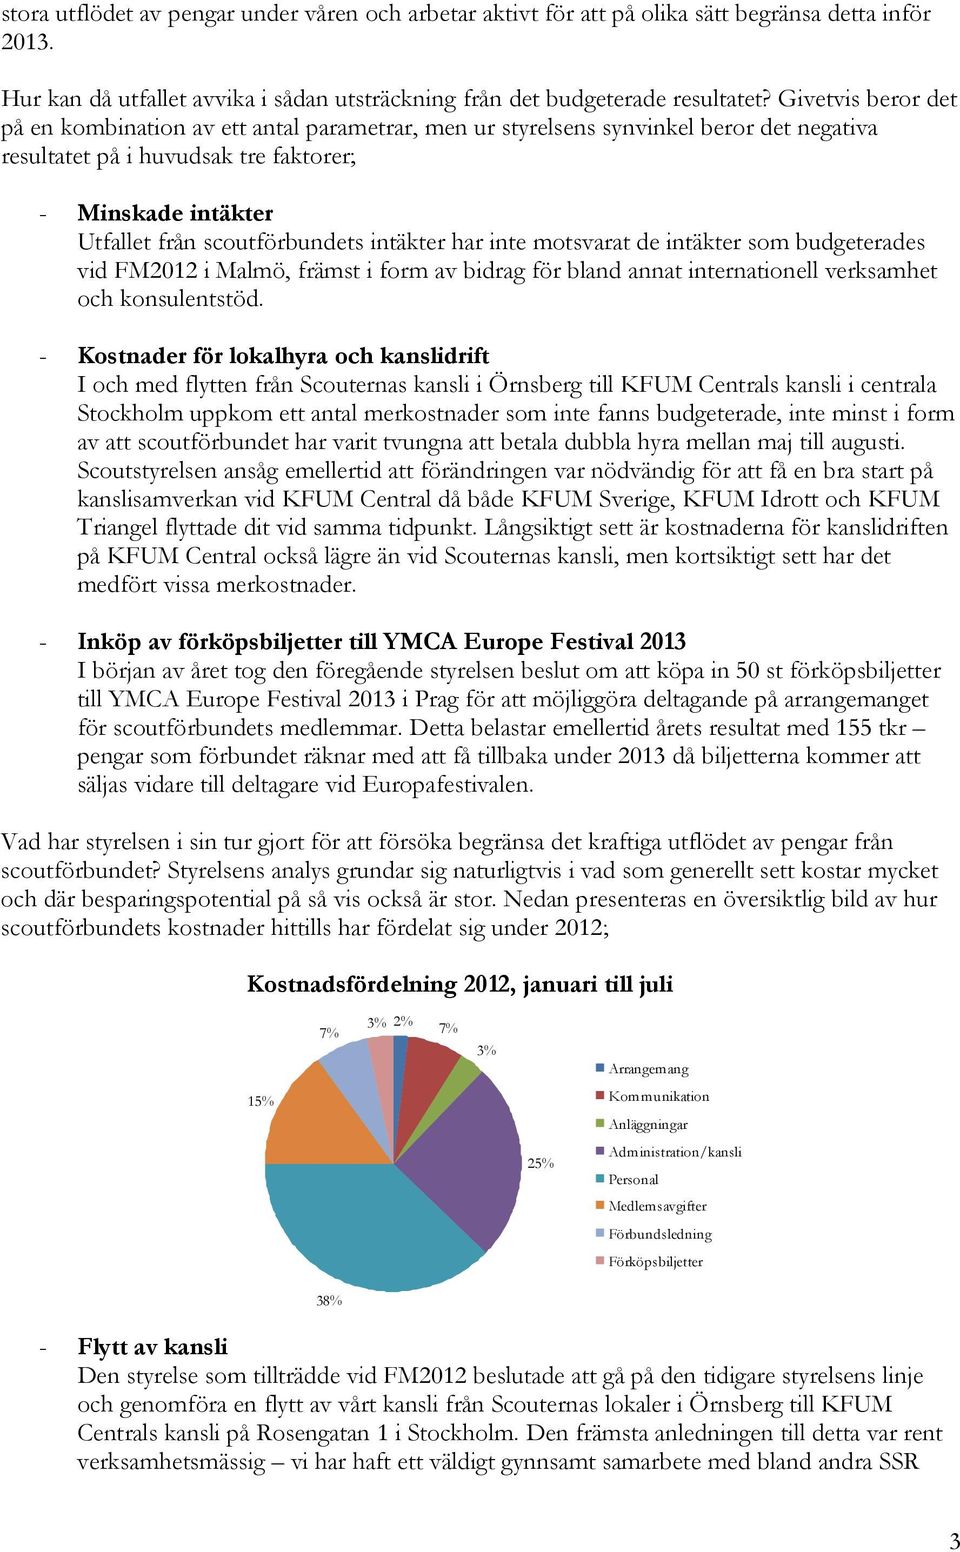 intäkter har inte motsvarat de intäkter som budgeterades vid FM2012 i Malmö, främst i form av bidrag för bland annat internationell verksamhet och konsulentstöd.